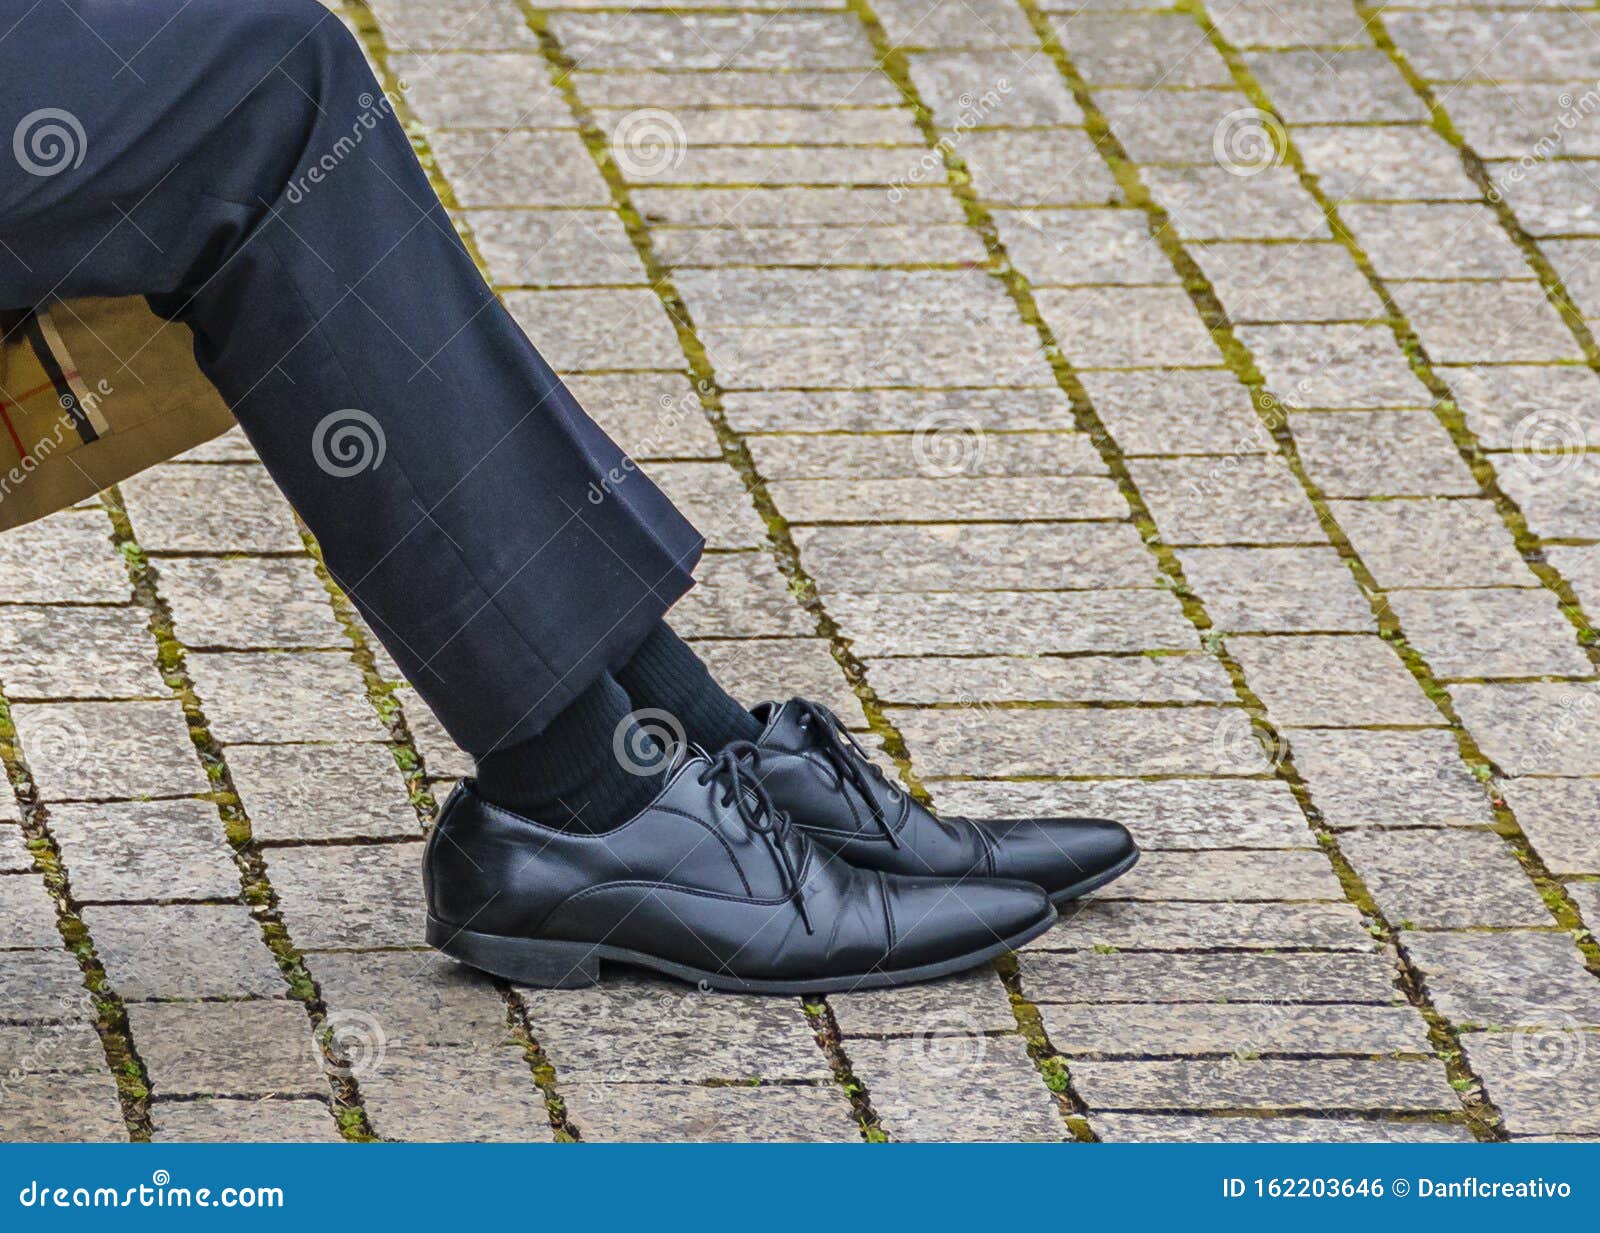 Muestras De Hombre Con Detalles De Pantalones Y Zapatos de - Imagen de siéntese, 162203646